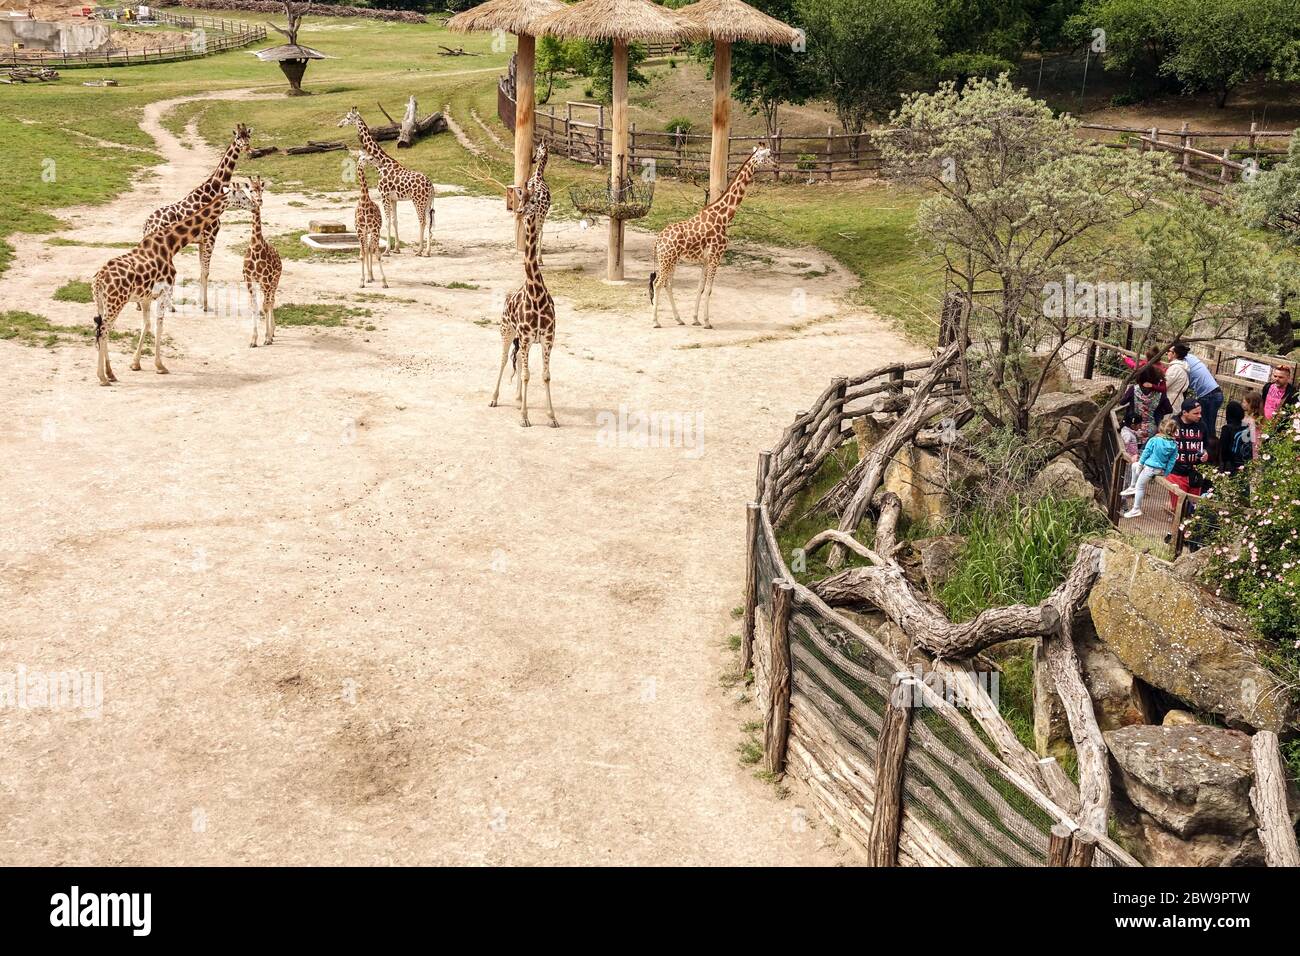 Leute, Besucher, schauen Sie sich die Giraffengehege an der Giraffe im Prager Zoo an, eine gute Veranstaltung für einen Tagesausflug für Familien mit Kindern Stockfoto